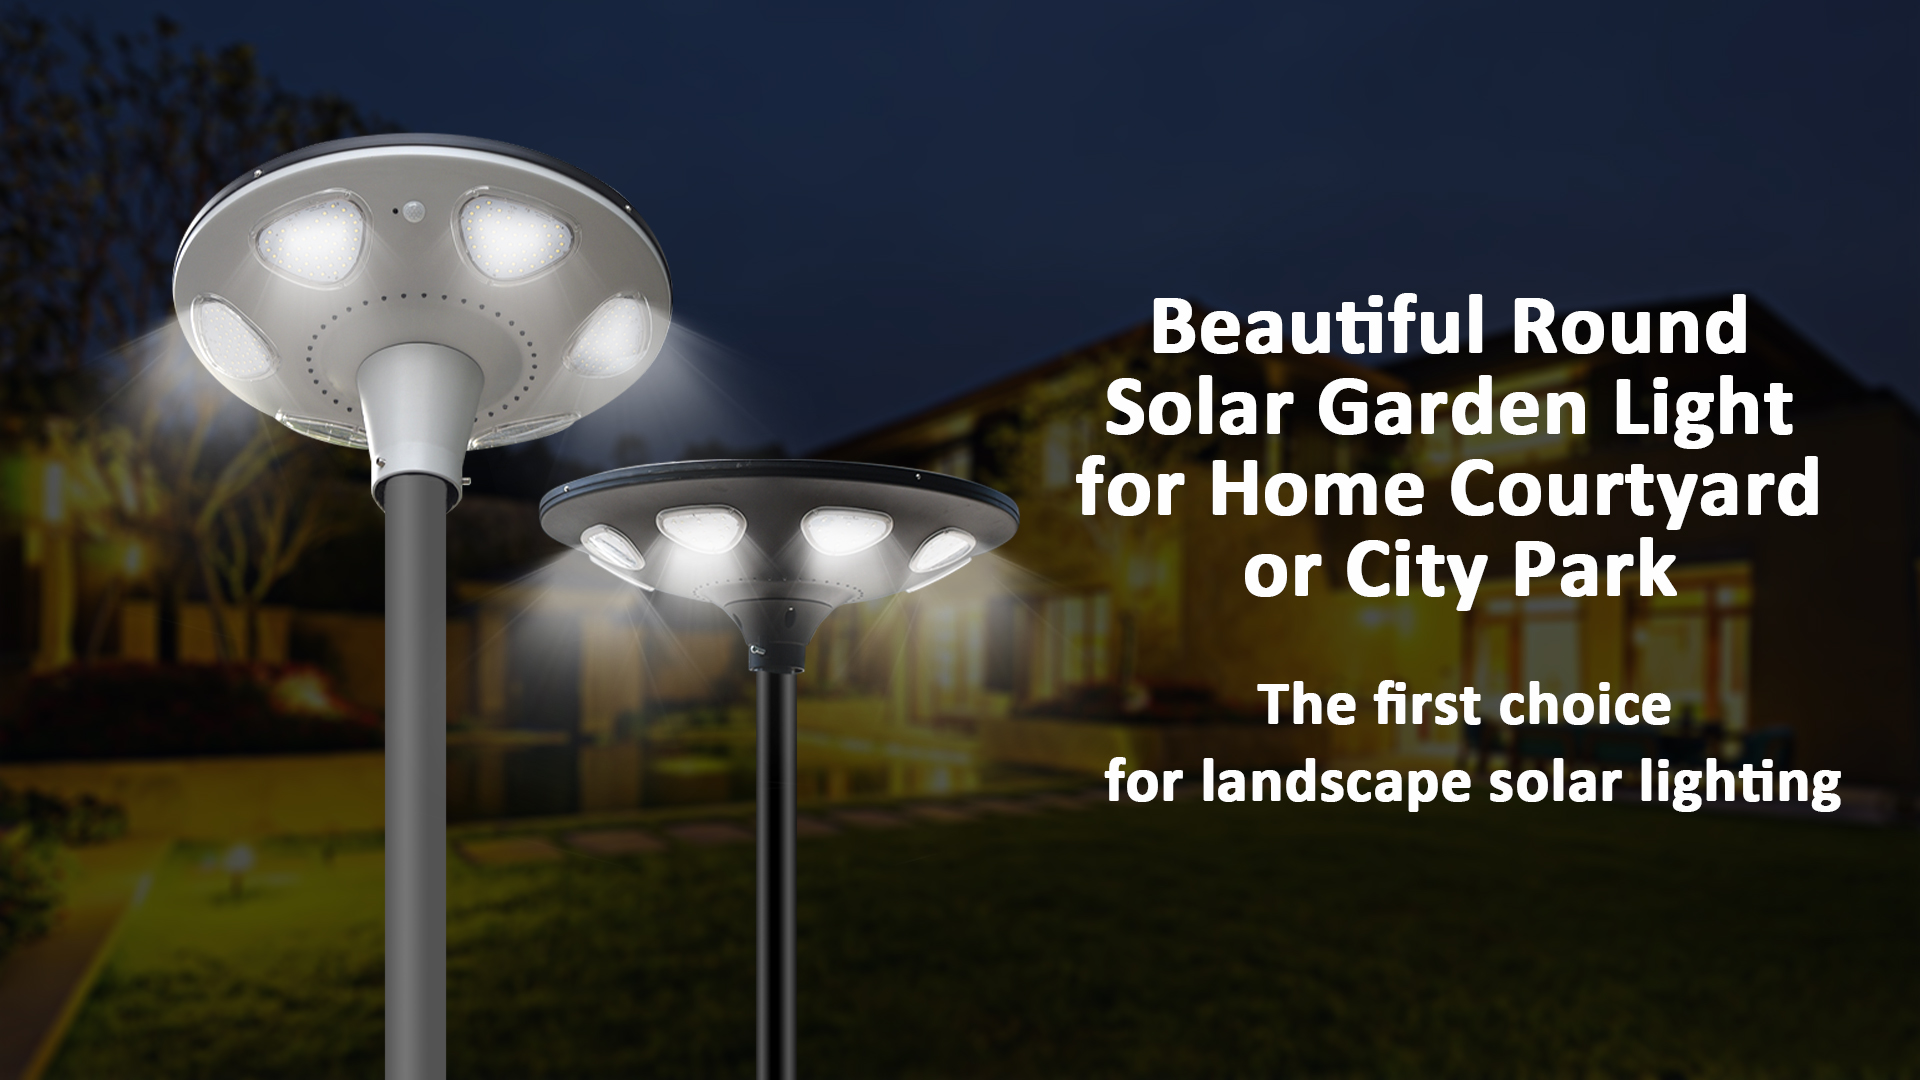 Hermosa luz redonda de jardín solar para el patio de la casa o el Parque de la ciudad